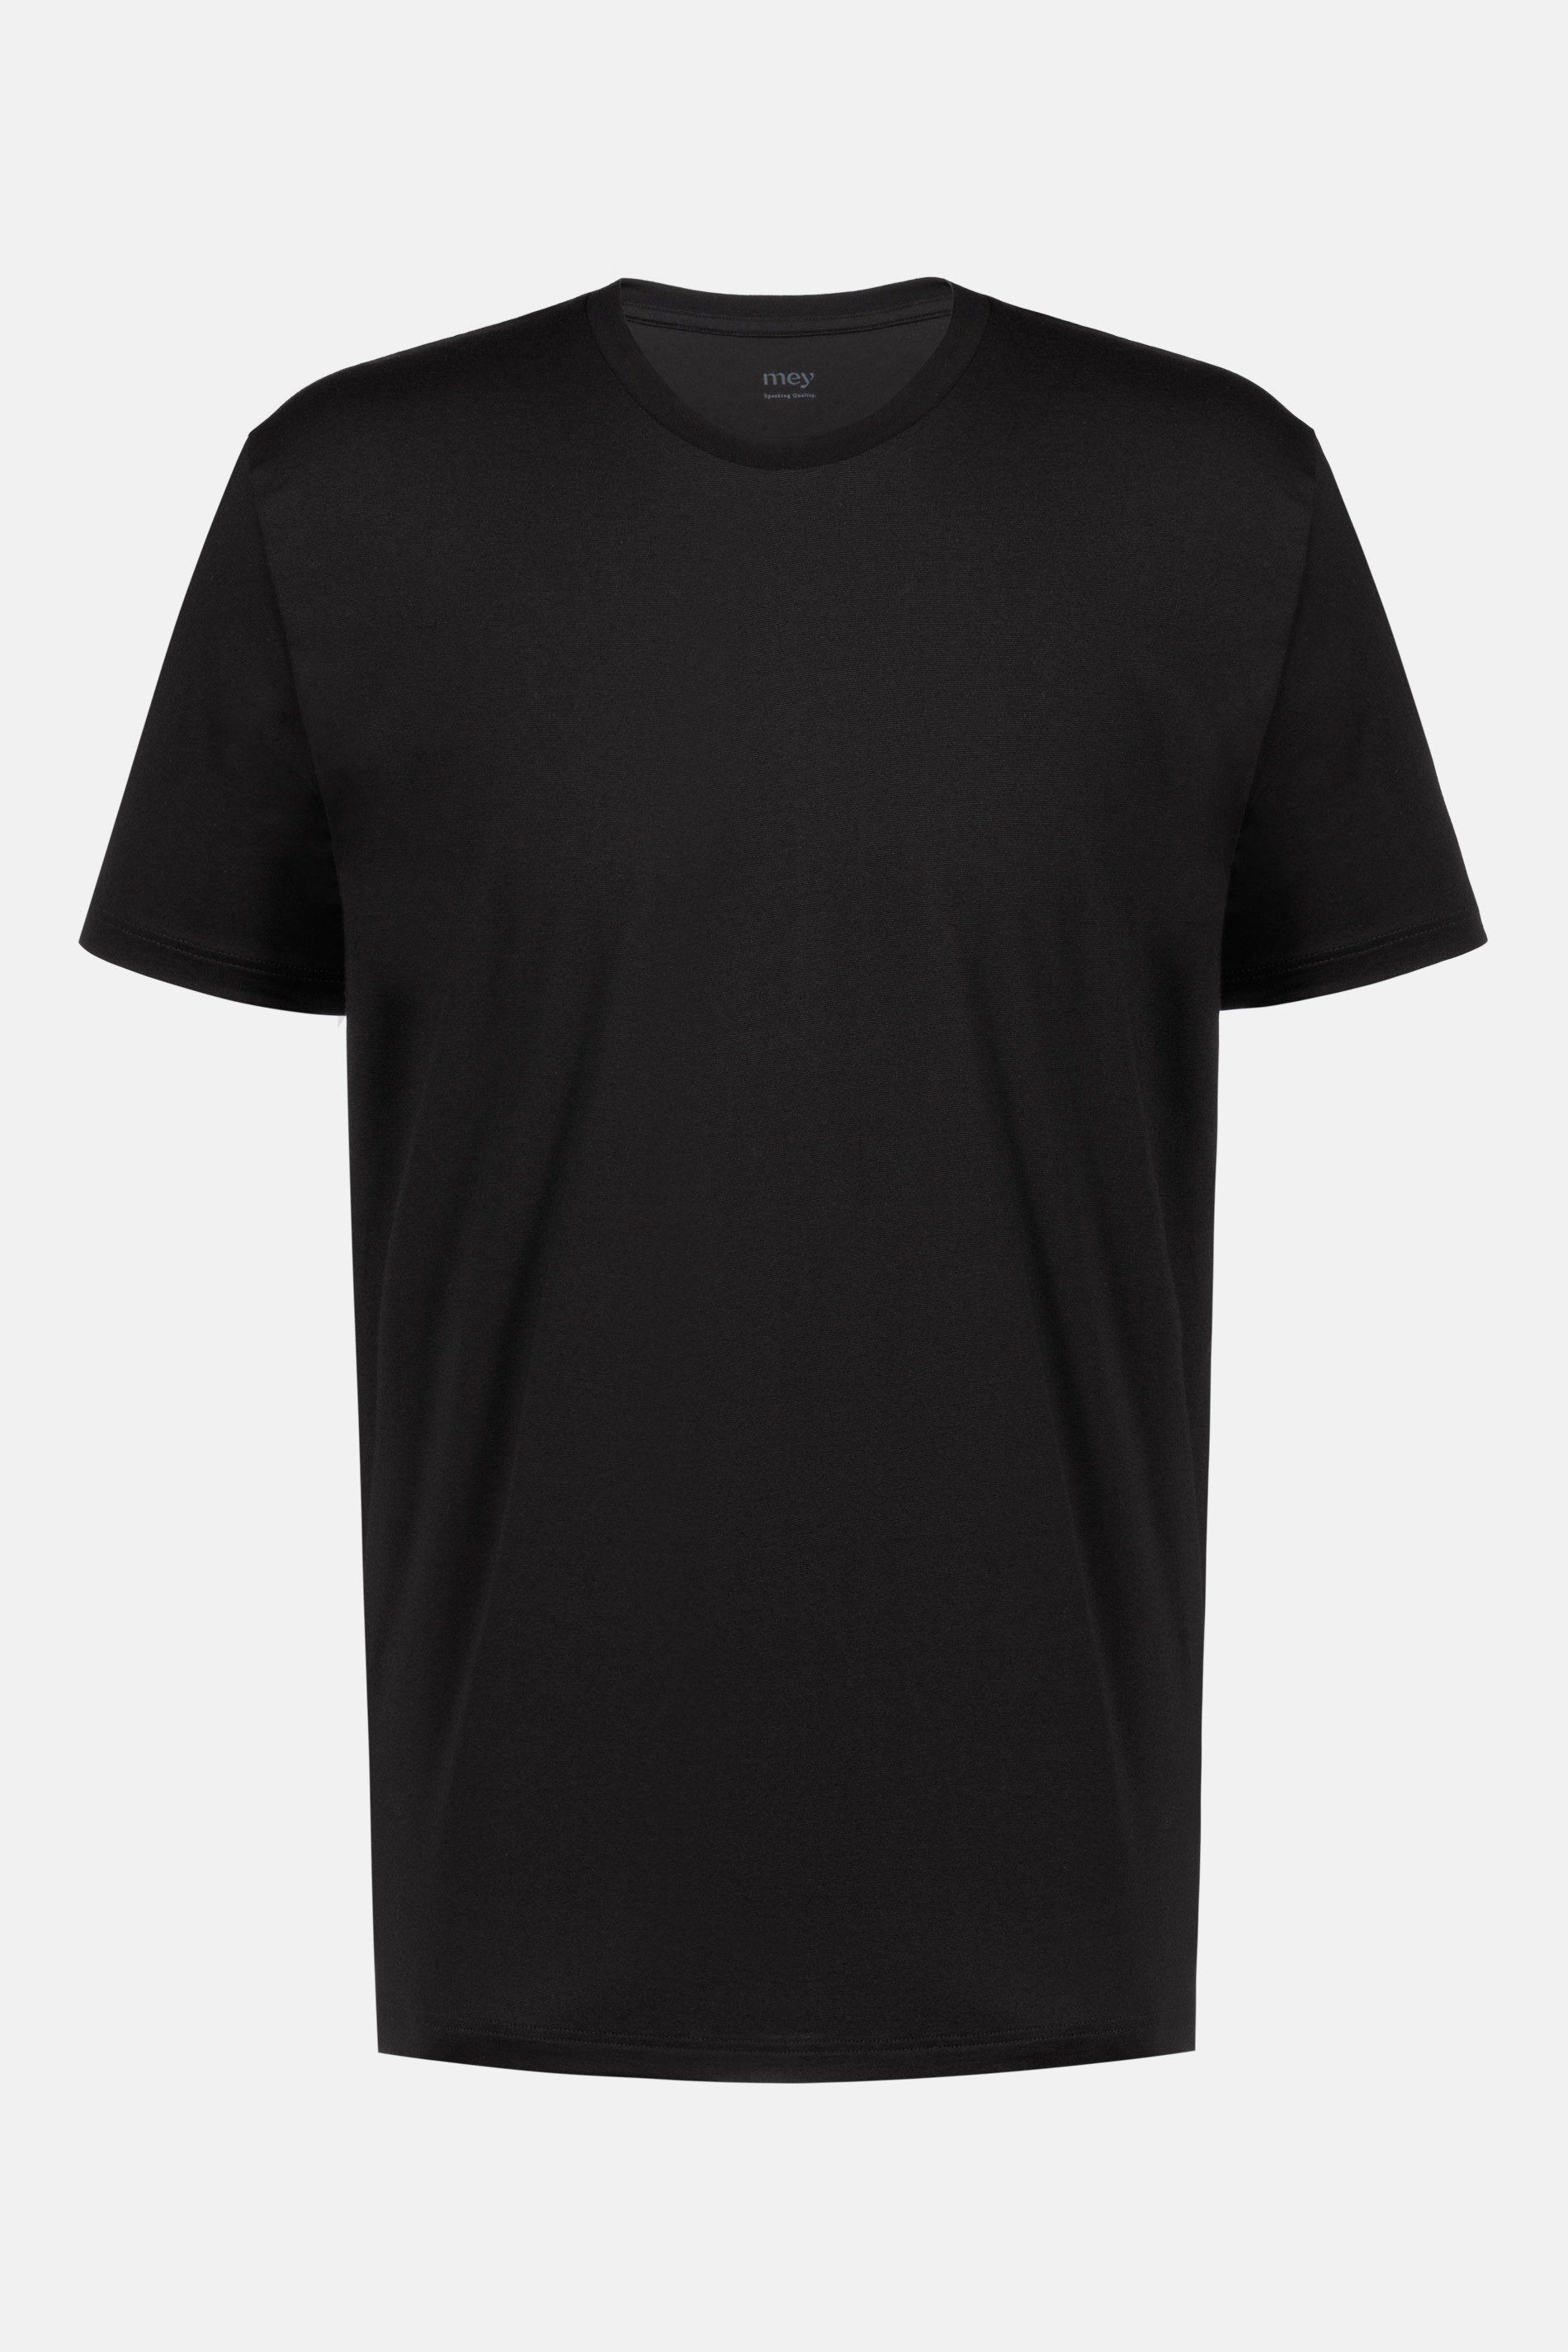 Mey T-Shirt Serie Dry Colour Cotton Uni Schwarz (1-tlg)